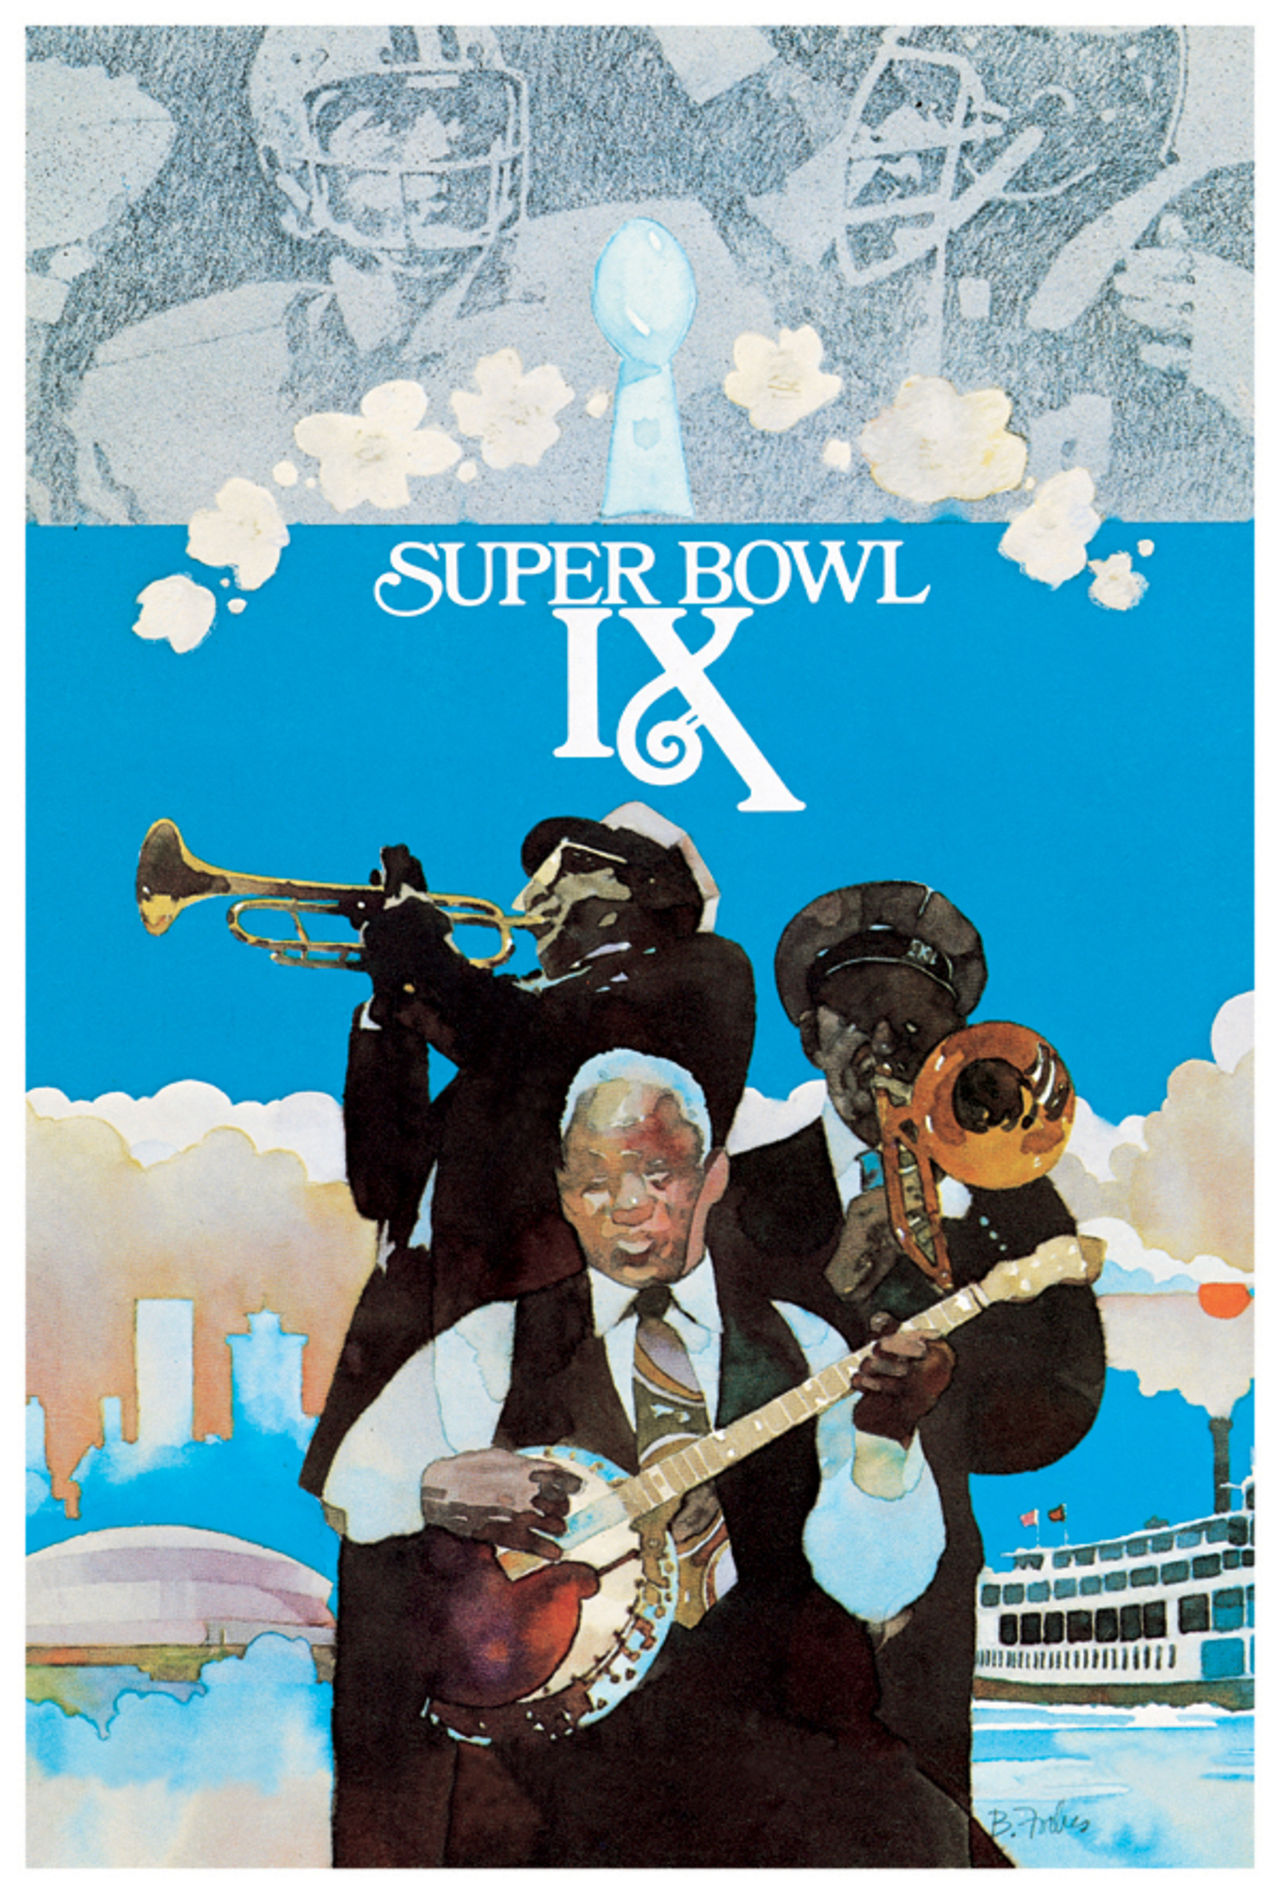 Super Bowl IX         Program